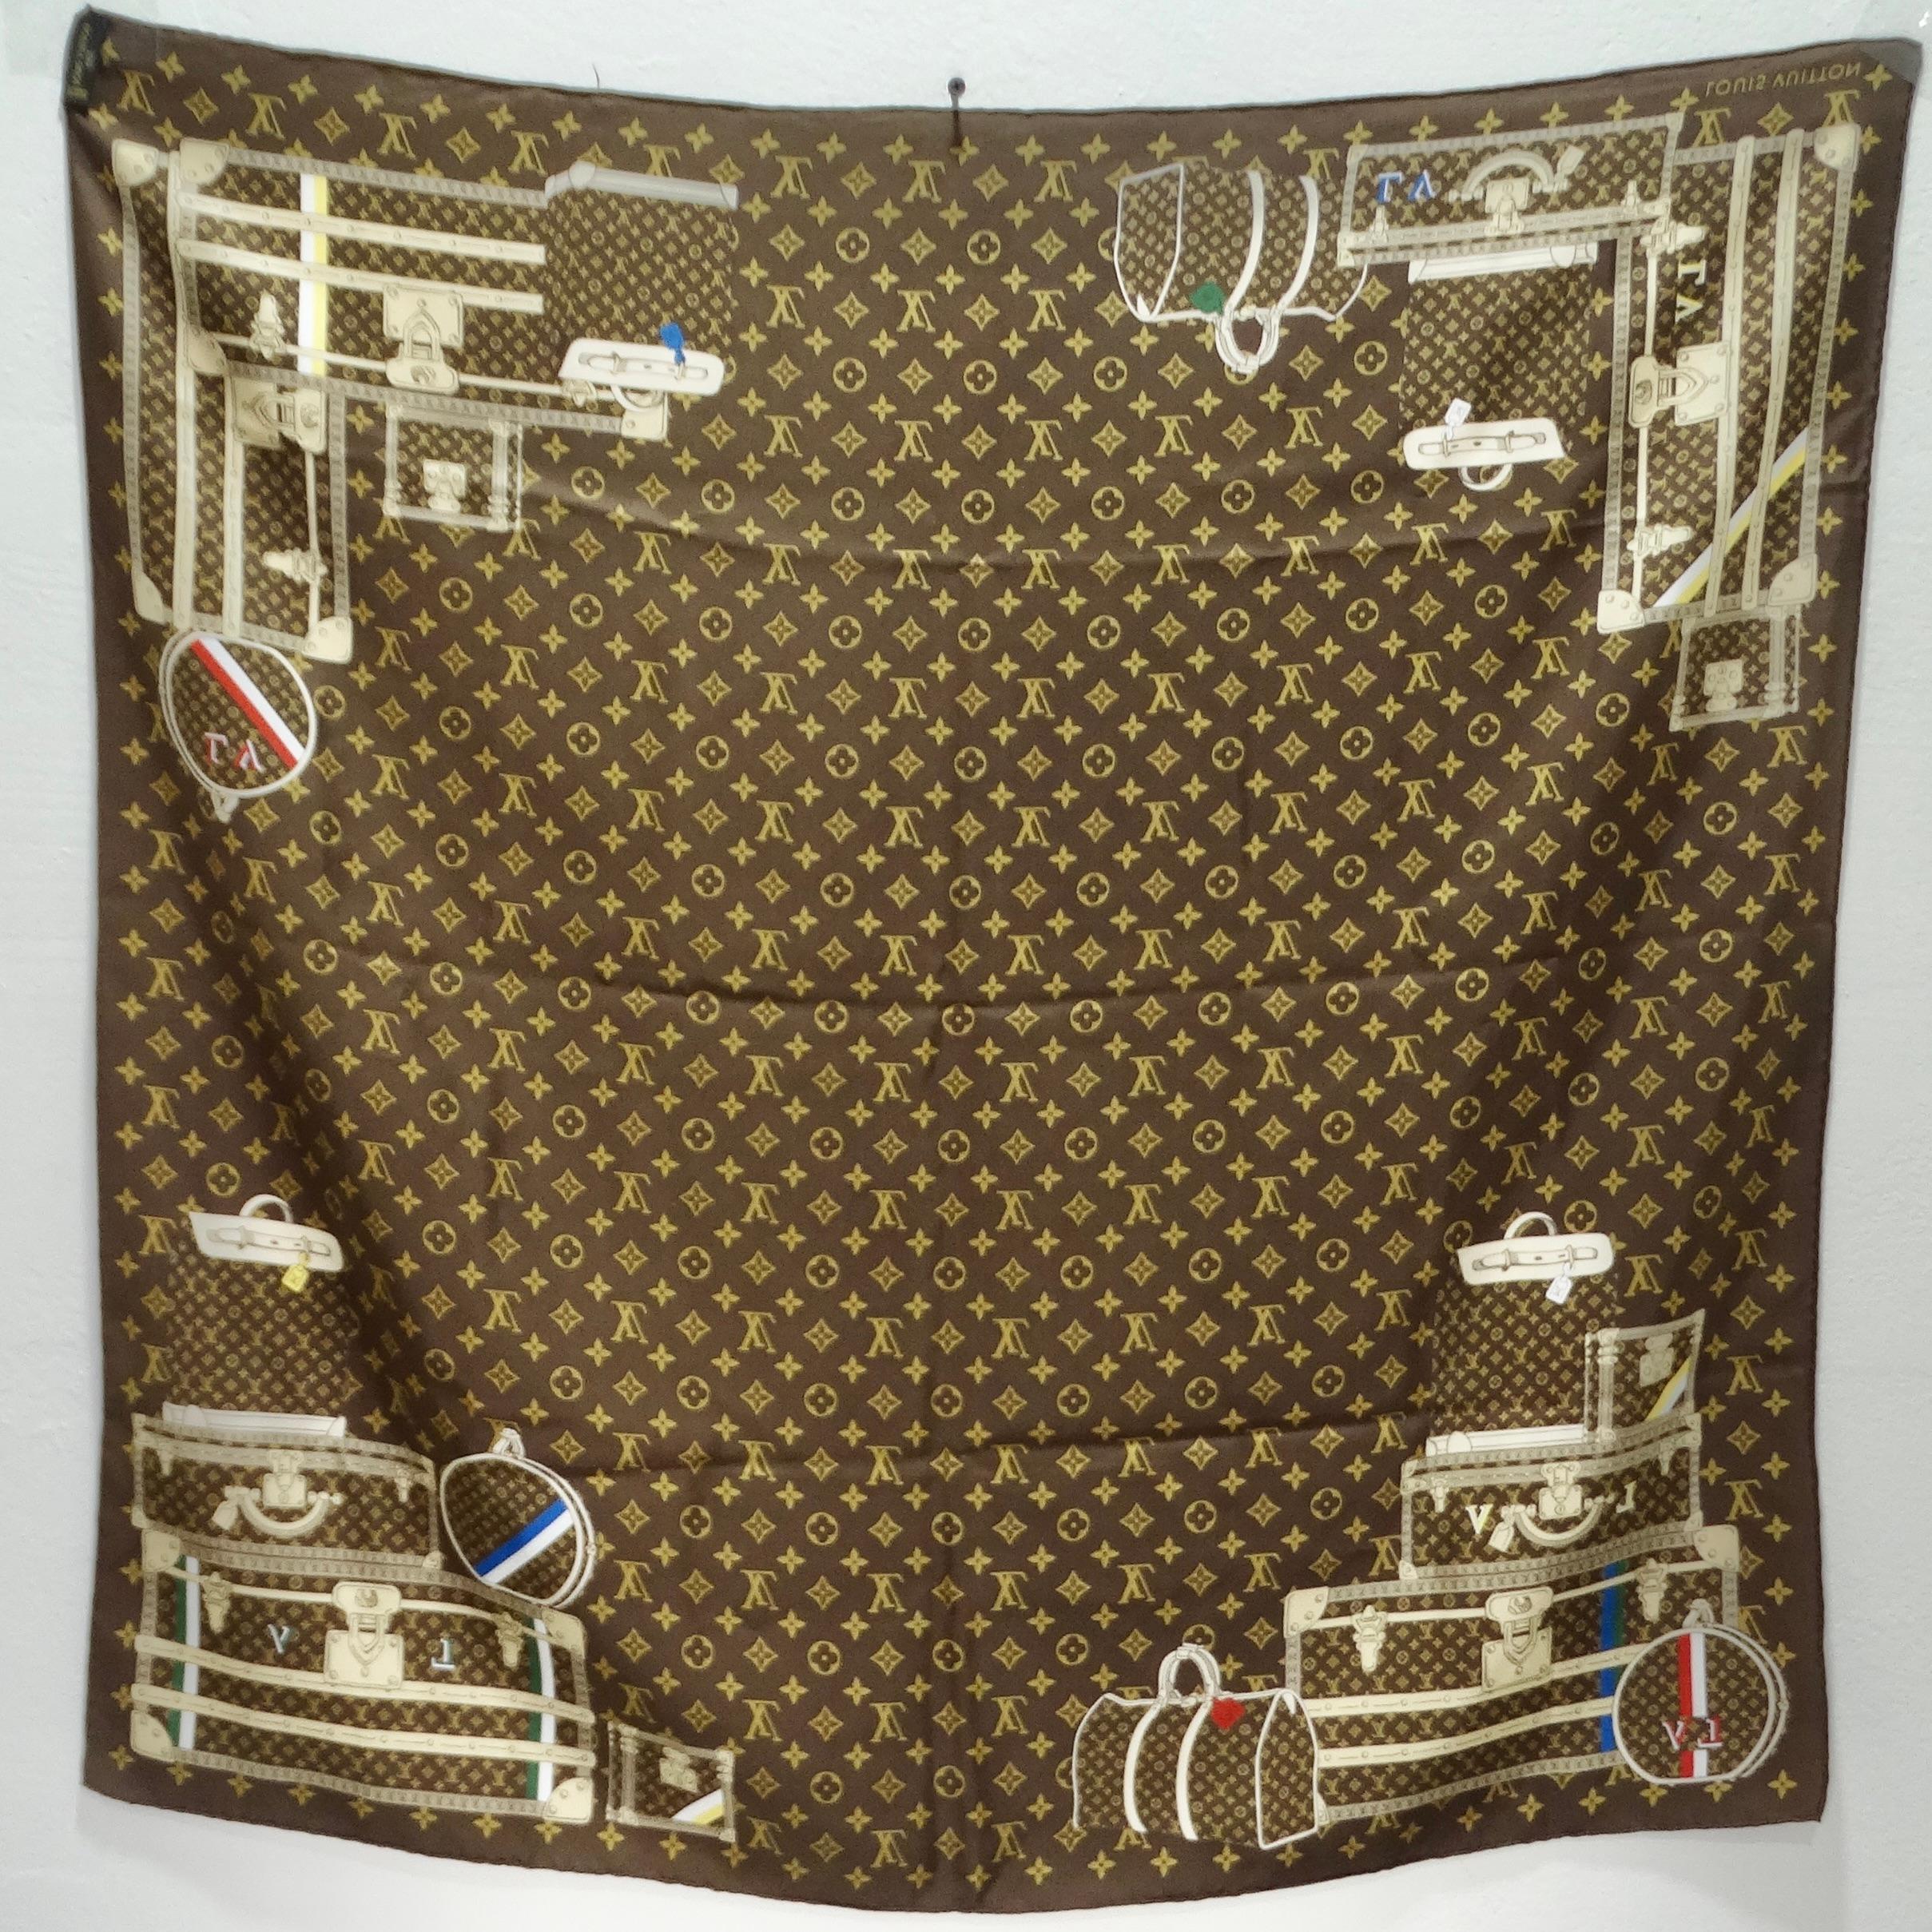 Voici l'écharpe en soie Monogram Brown de Louis Vuitton Travel Trunks & Bags - une fusion de luxe et de style ludique qui rend hommage à l'héritage de la marque emblématique. Confectionnée en soie somptueuse, cette écharpe arbore le monogramme Louis